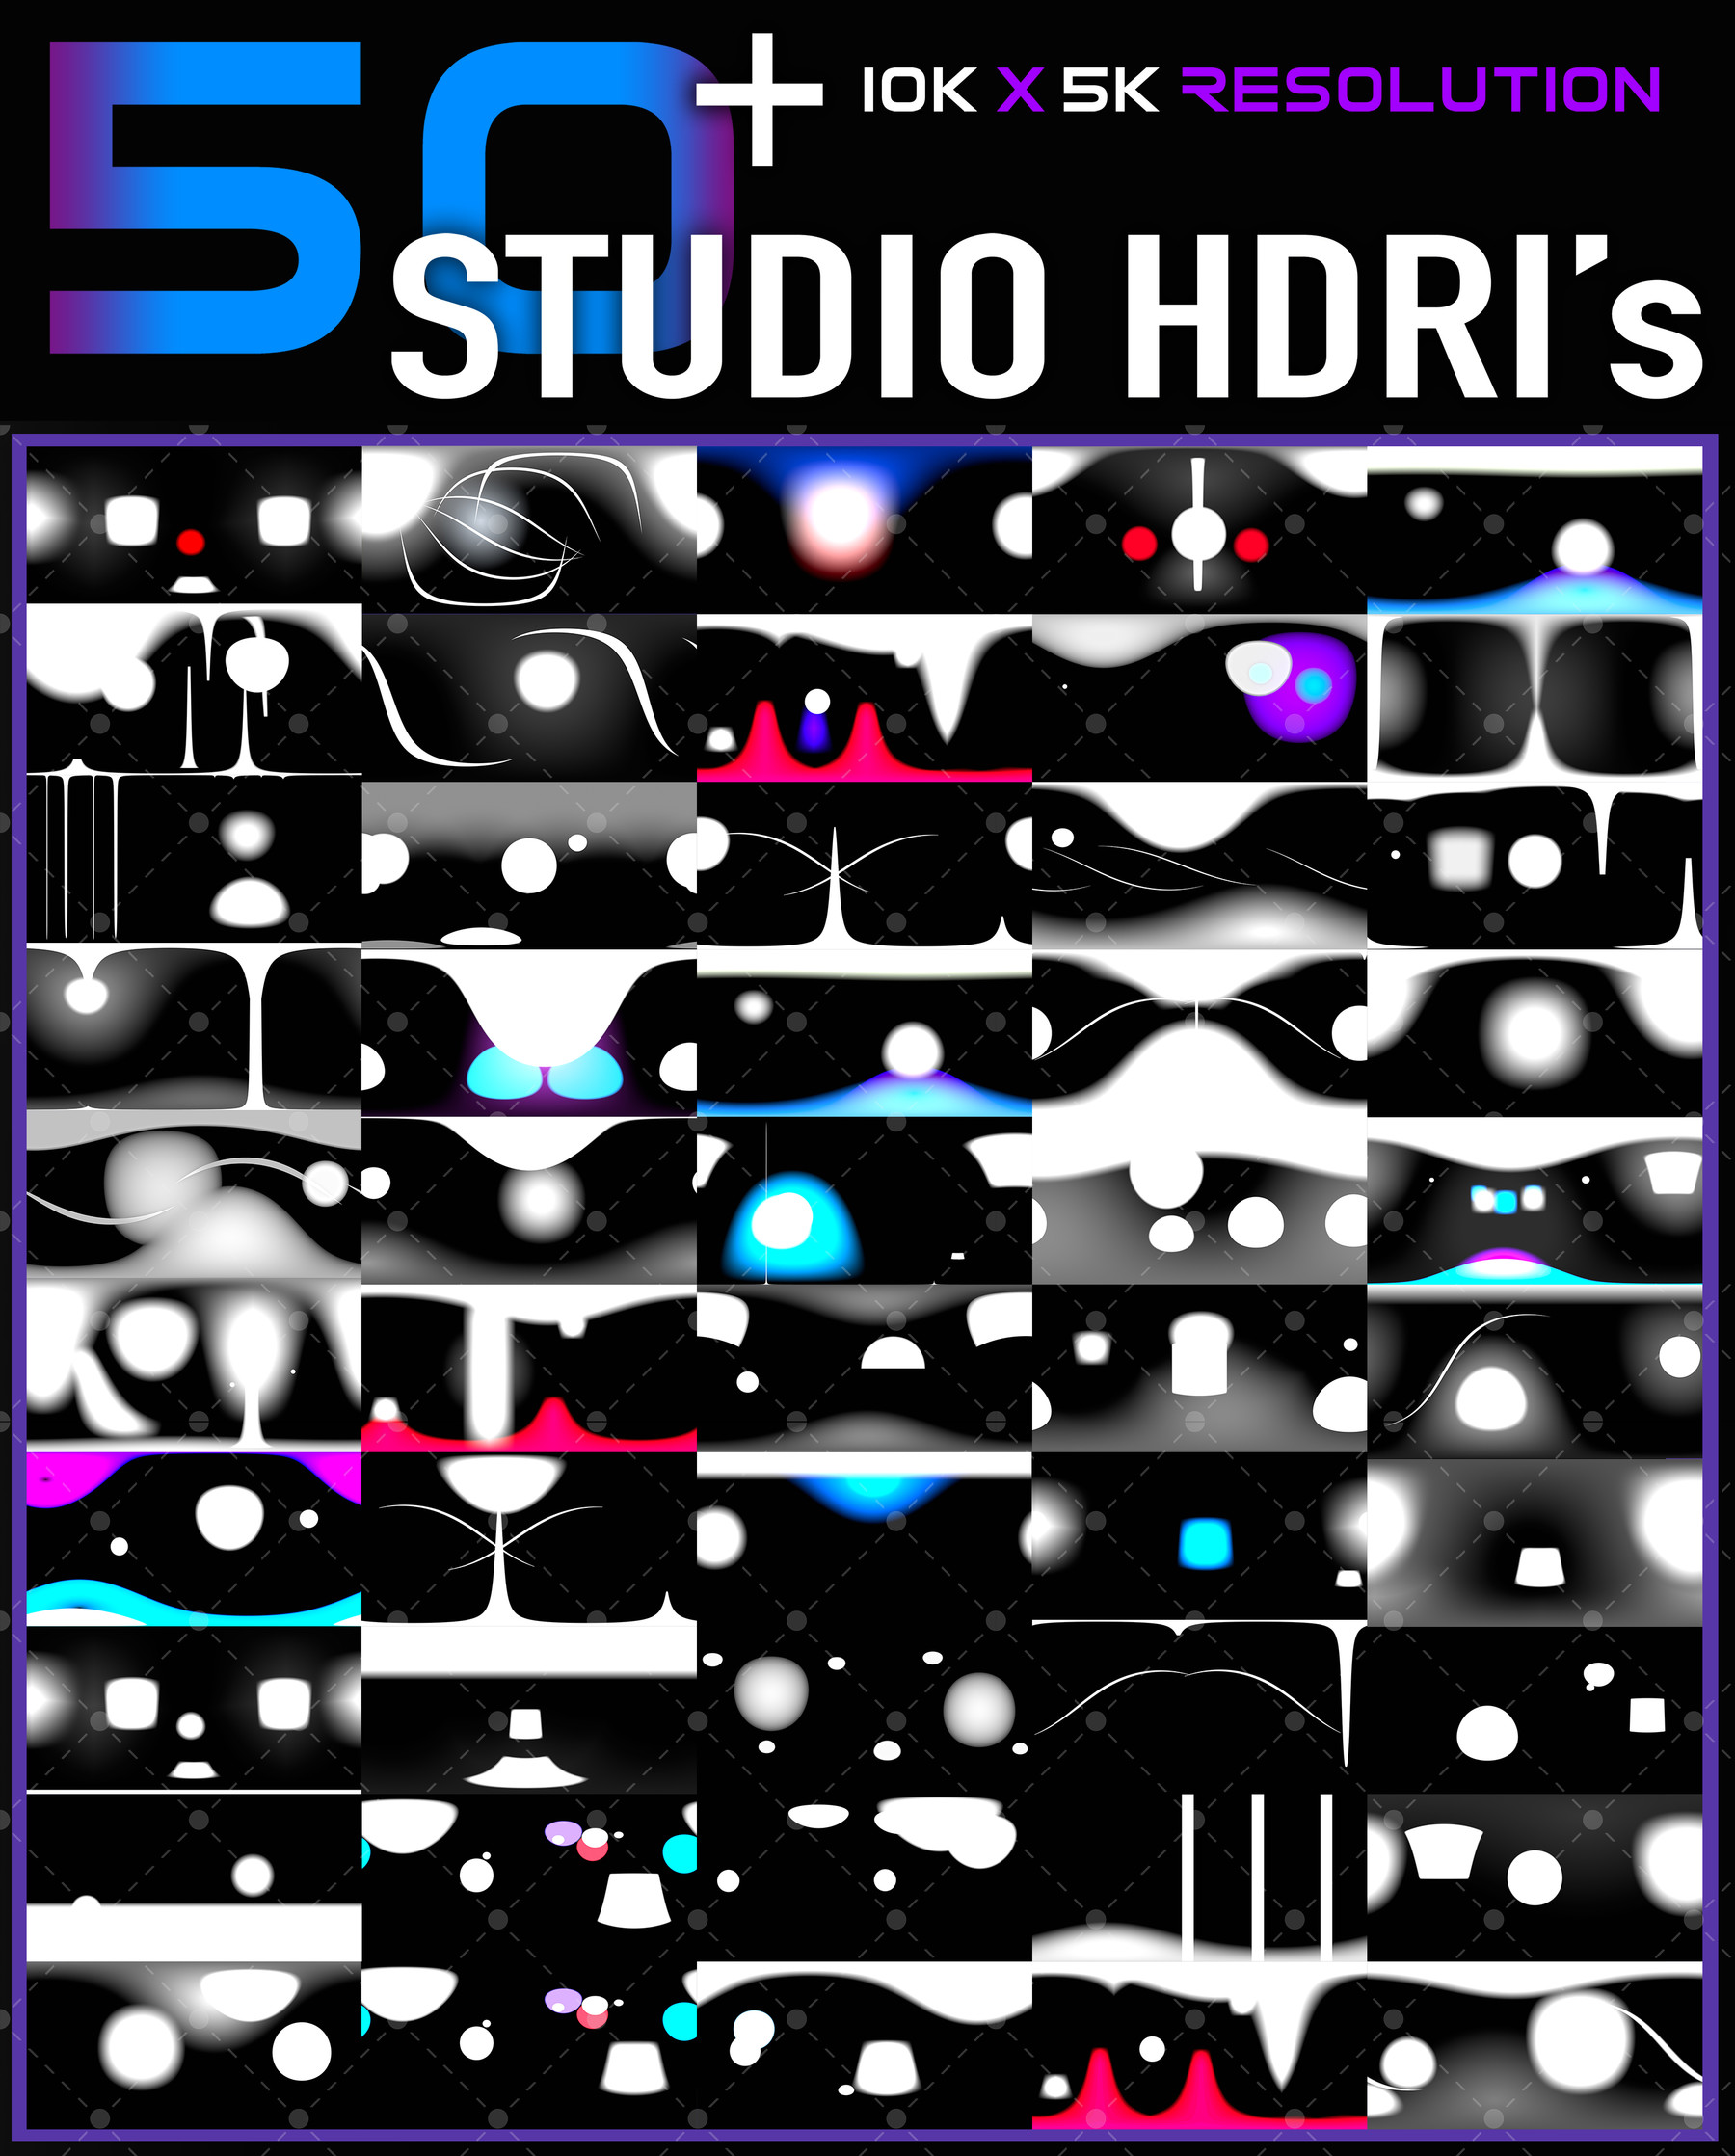 hdri studio pack download